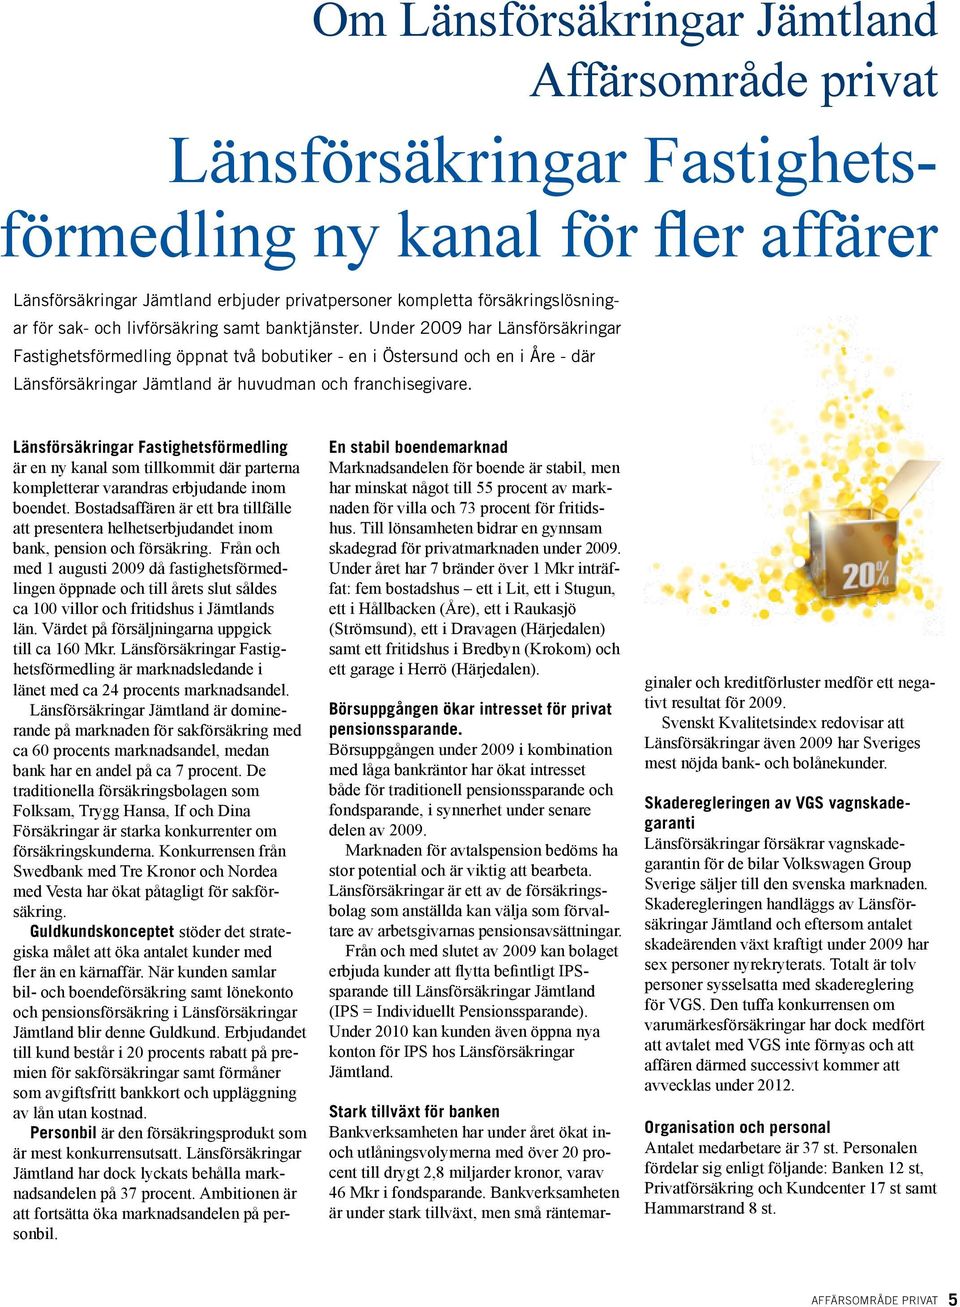 Under 2009 har Länsförsäkringar Fastighetsförmedling öppnat två bobutiker - en i Östersund och en i Åre - där Länsförsäkringar Jämtland är huvudman och franchisegivare.